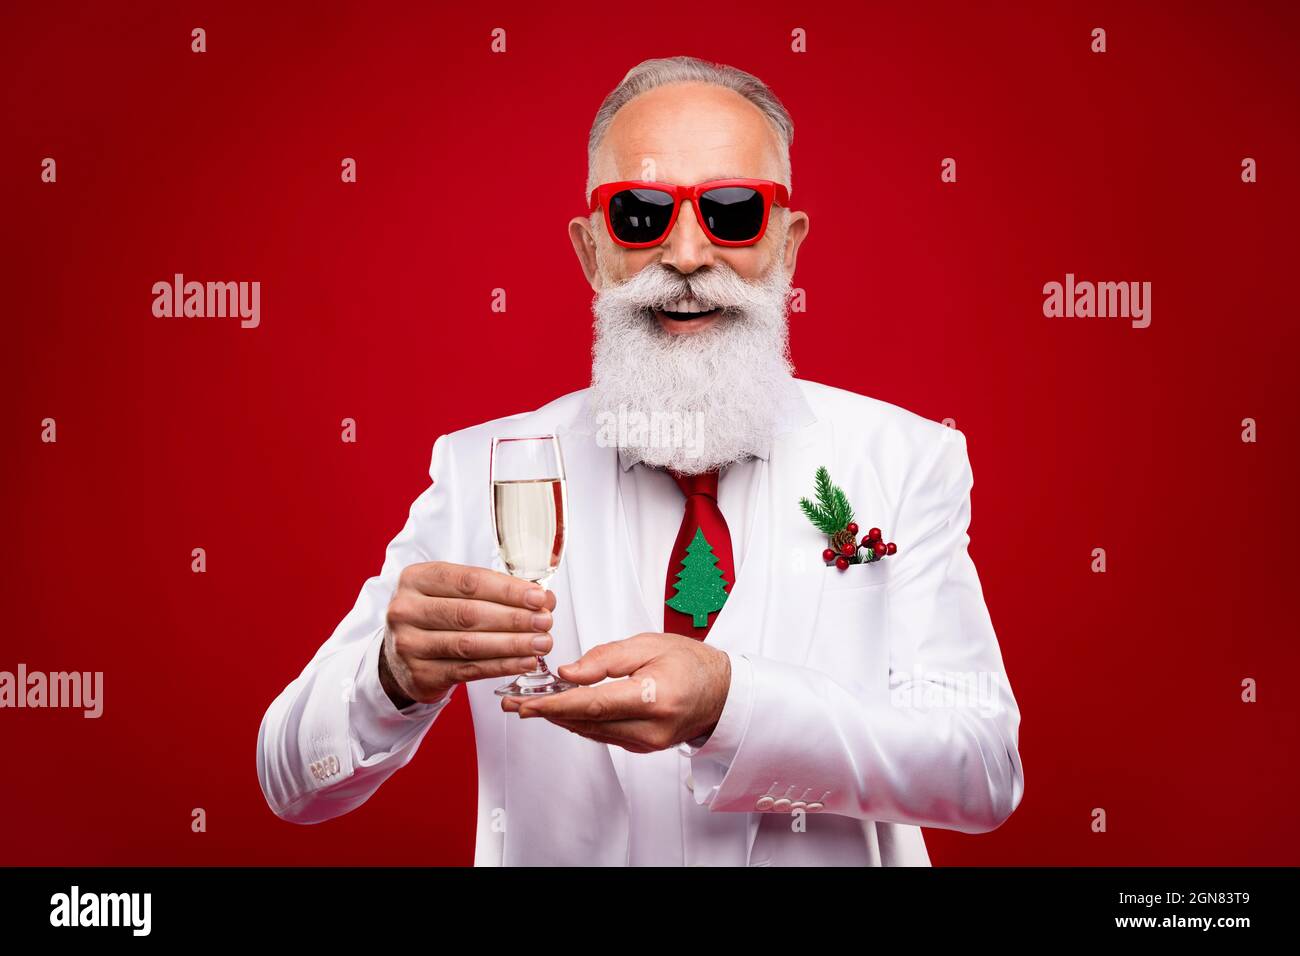 Foto von charmanten glücklich positive Mann halten Hände Champagner Glas Lächeln Weihnachten isoliert auf rotem Hintergrund Stockfoto